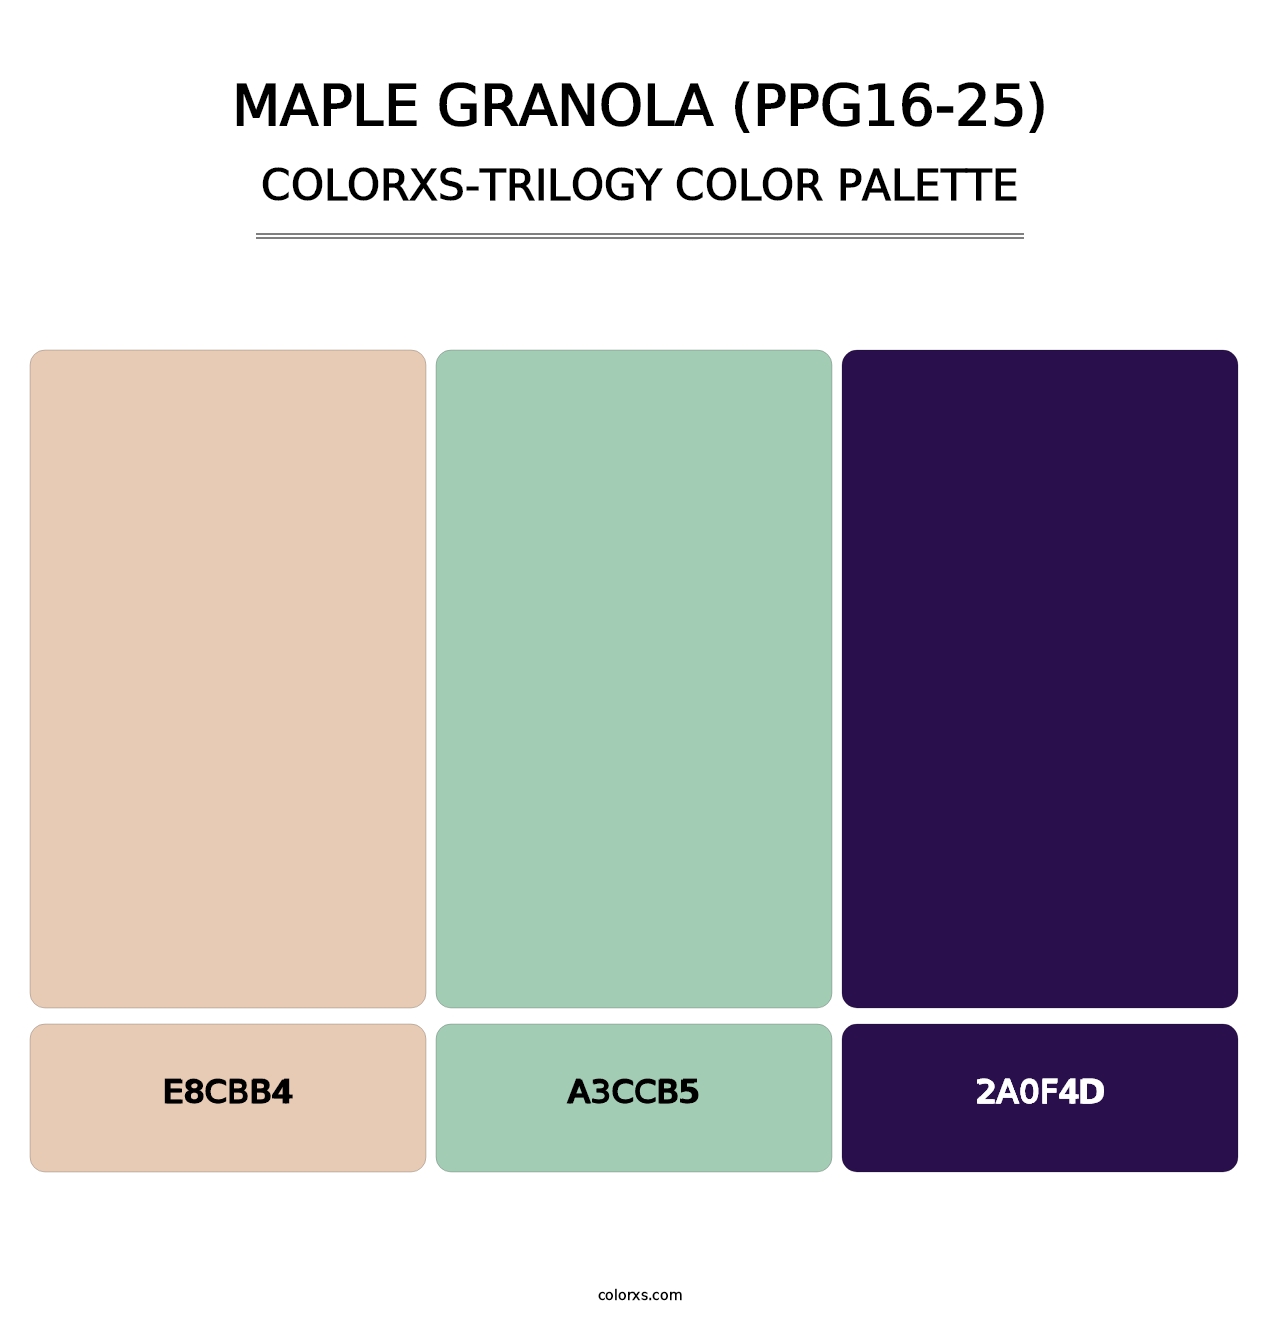 Maple Granola (PPG16-25) - Colorxs Trilogy Palette